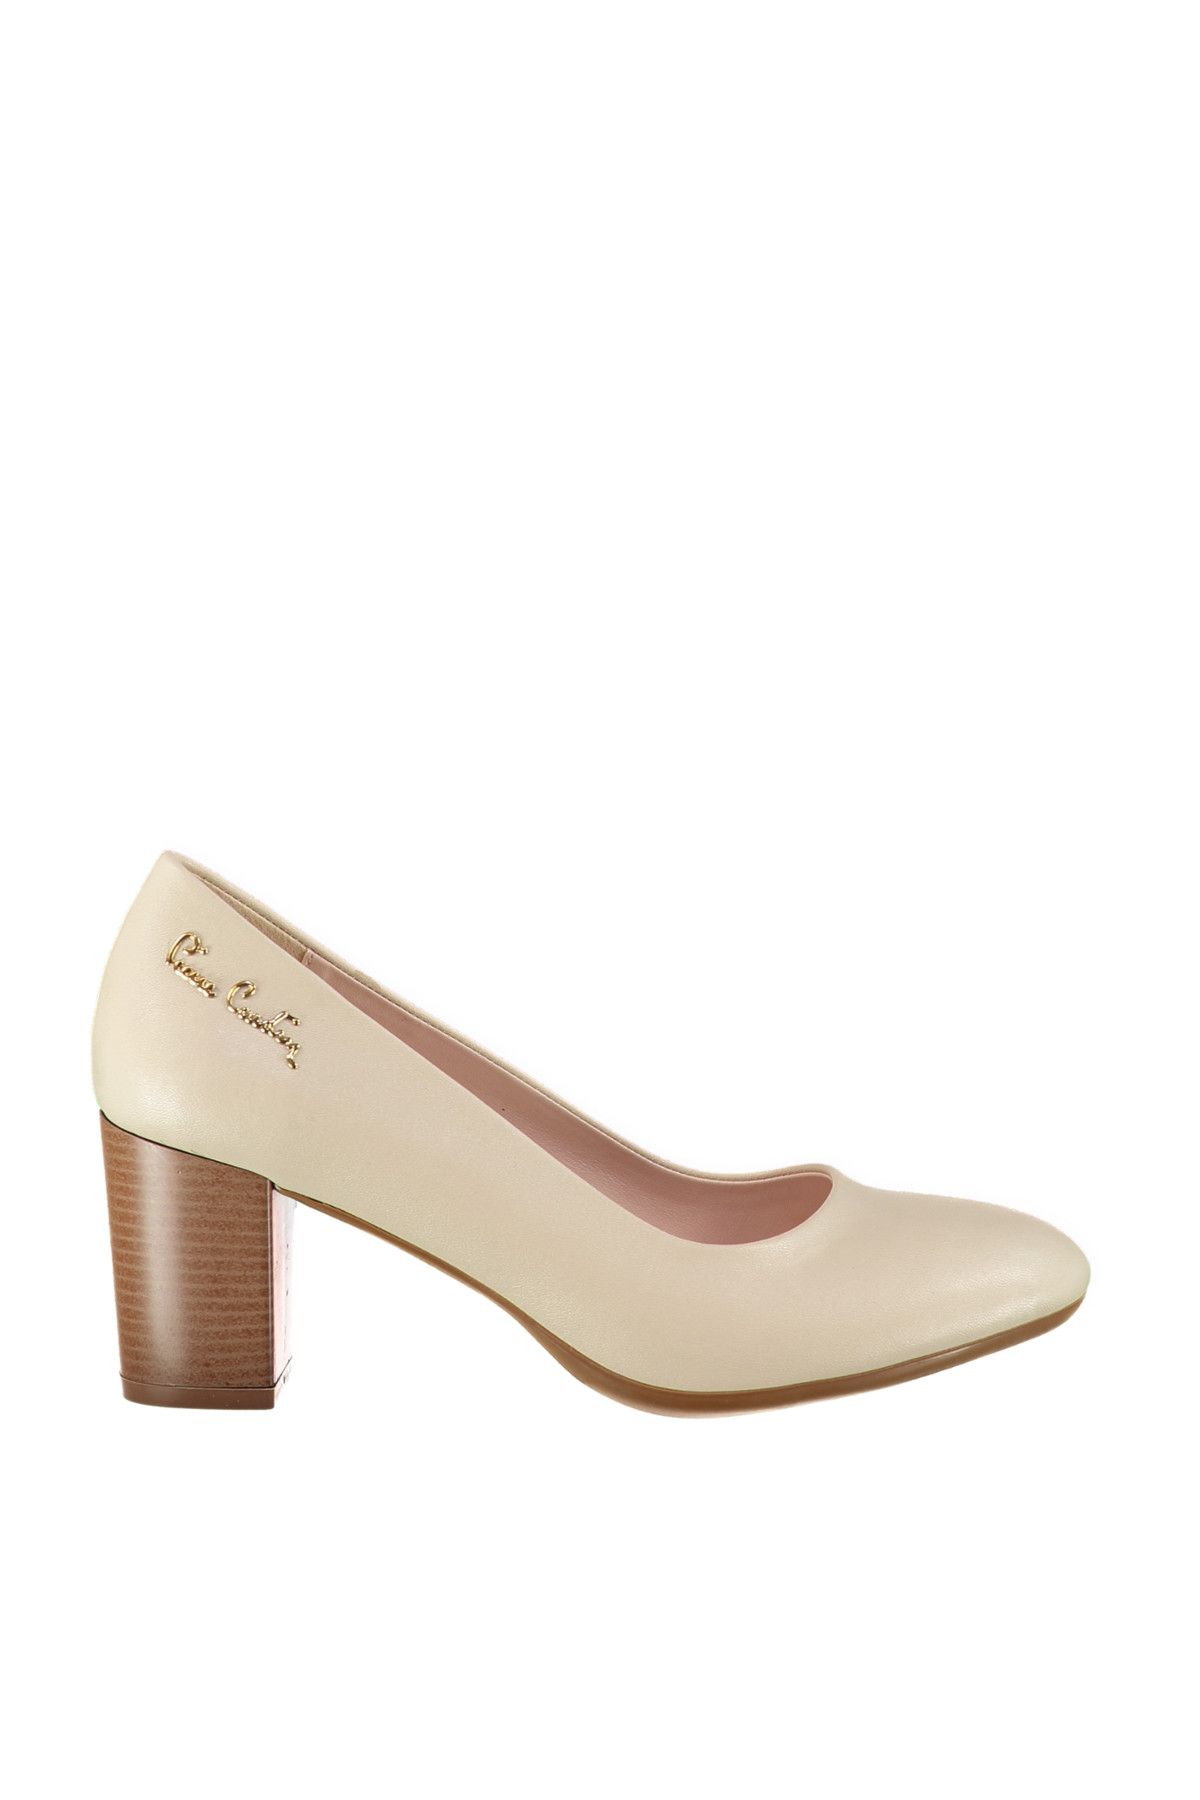 Pierre Cardin Bej Kadın Klasik Topuklu Ayakkabı 71059